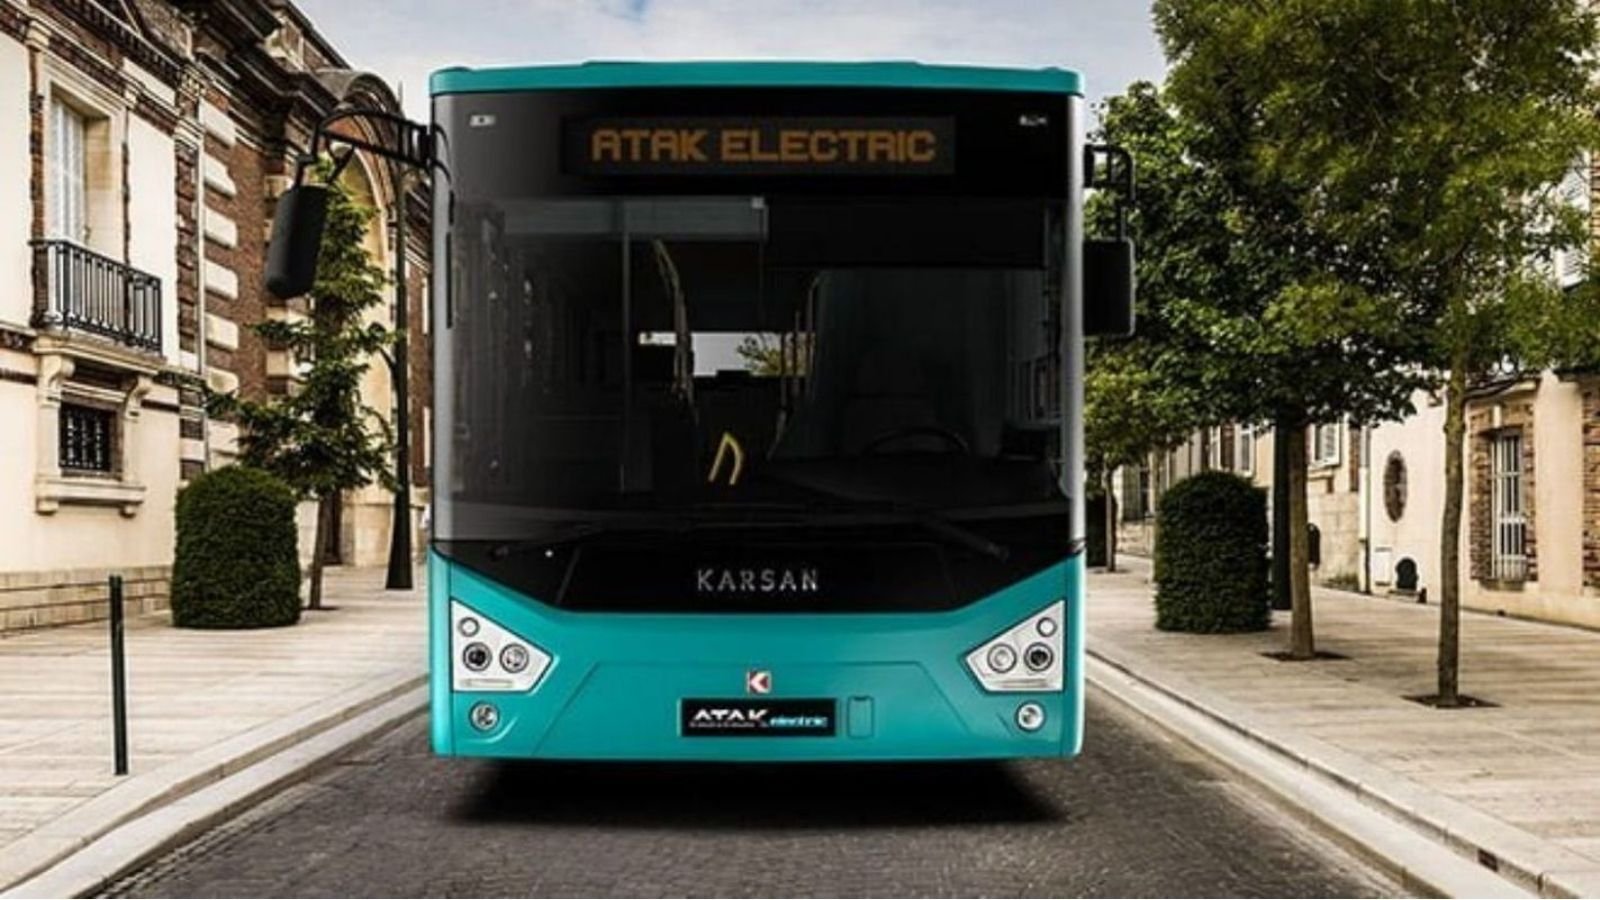 Karsan Otonom e-ATAK markası, yapılan resmi açıklamaya göre Finlandiya’nın da ilk sürücüsüz elektrikli otobüsü olmayı başardı.